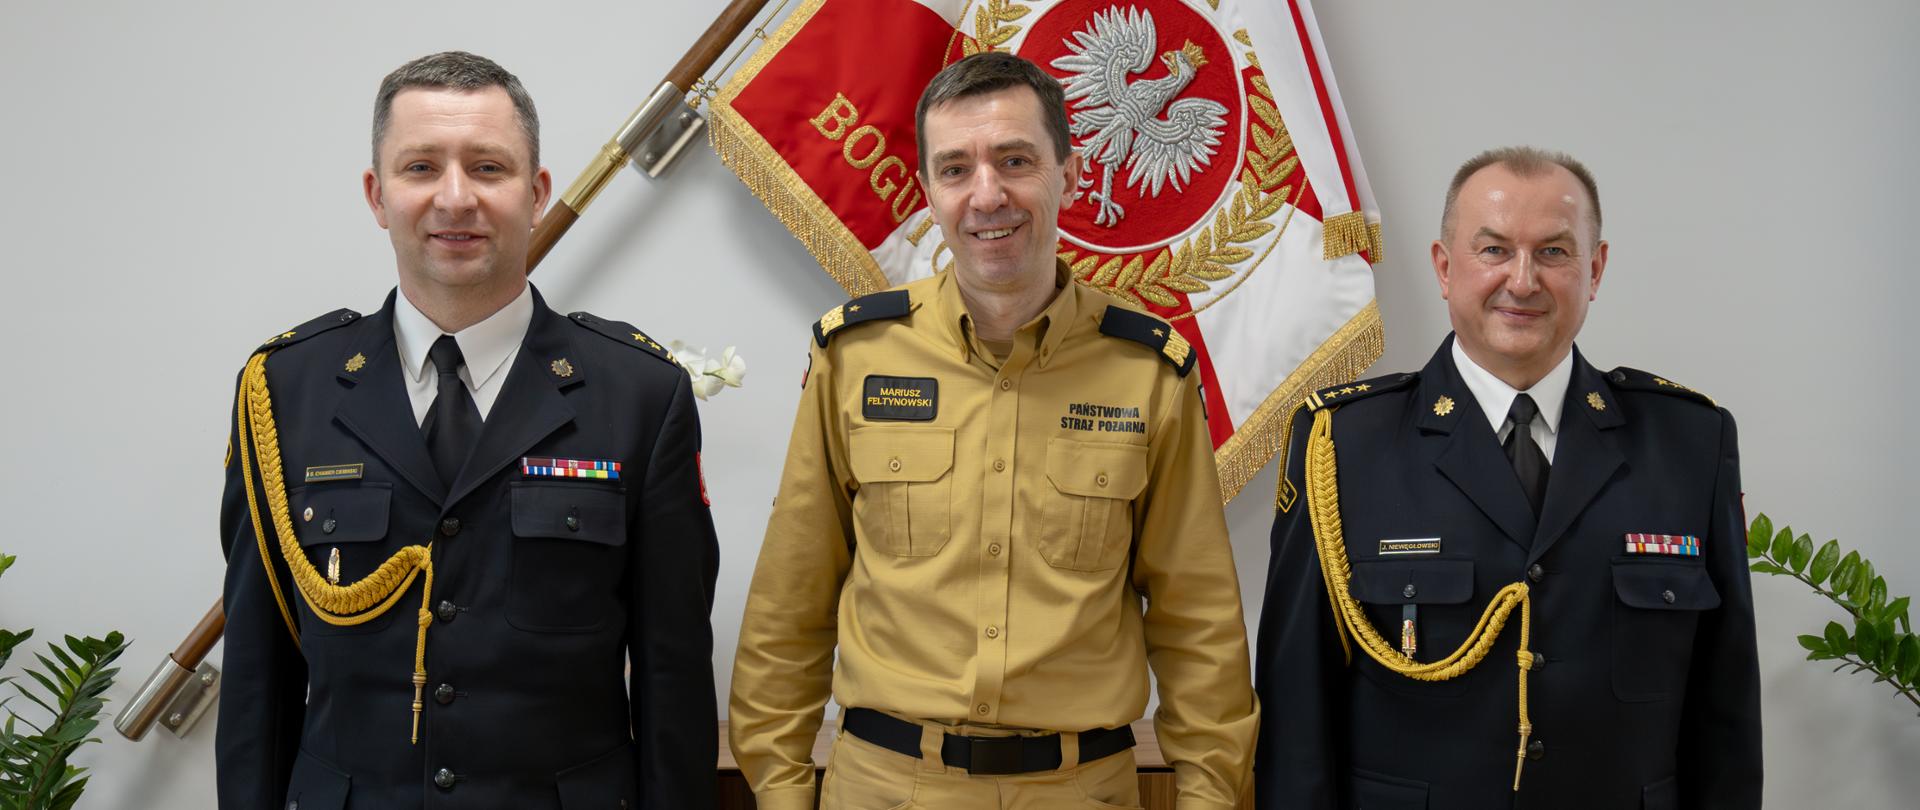 Strażak w mundurze w kolorze musztardowym stoi pomiędzy dwoma strażakami w mundurach wyjściowych ze sznurem za nimi na ścianie wisi sztandar Państwowej Straży Pożarnej oraz umieszczona jest komoda.